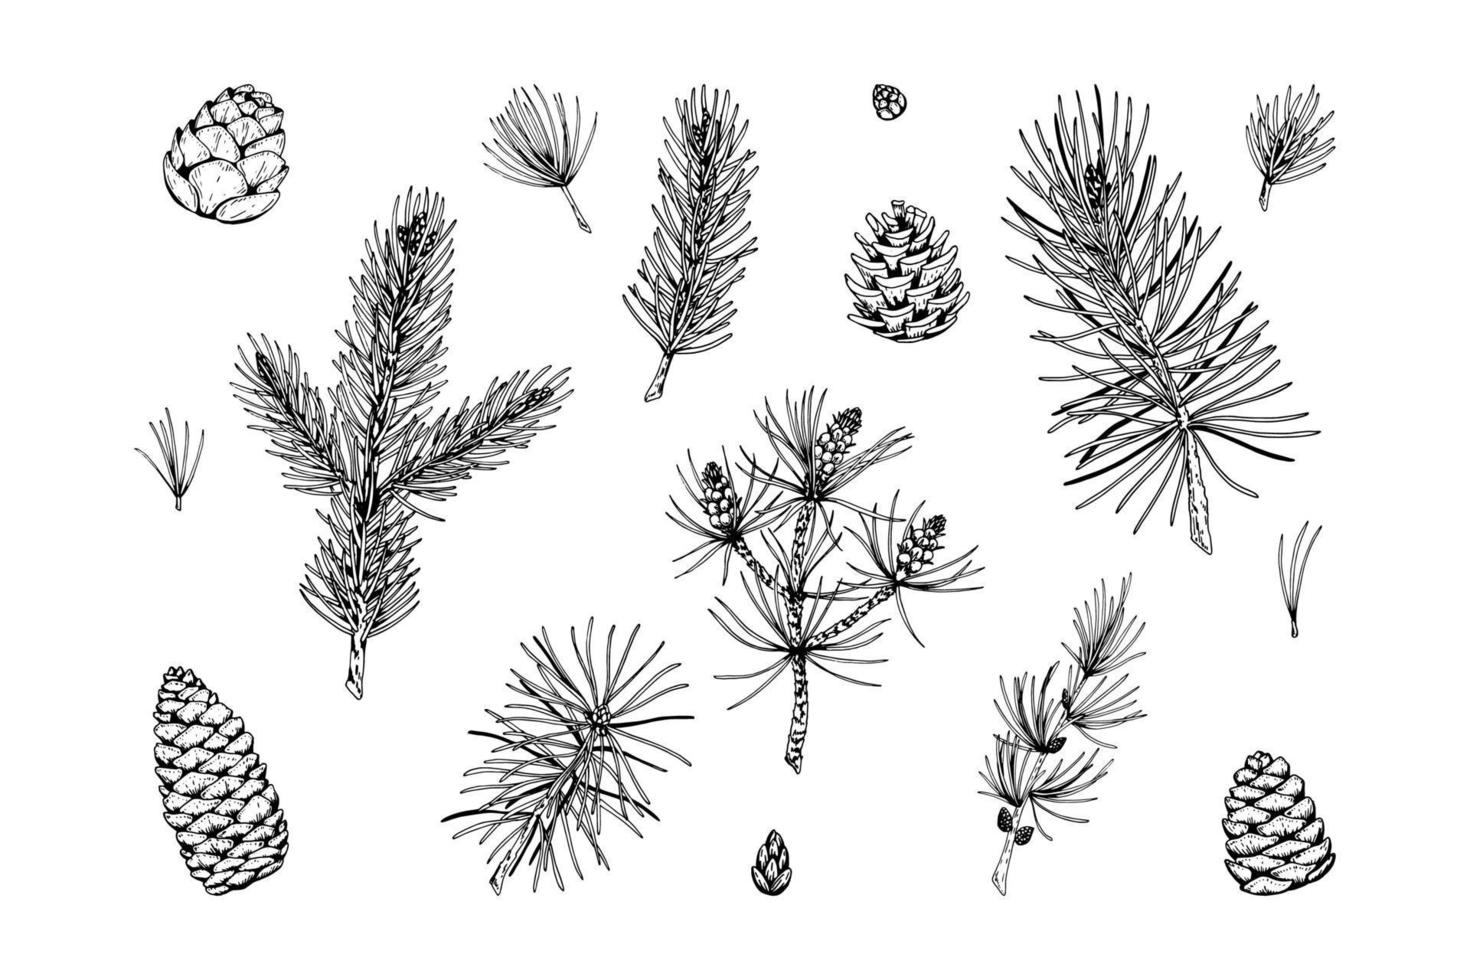 Satz von Nadelpflanzendekorelementen in der Skizzenart lokalisiert auf weißem Hintergrund. Vektor-Illustration von Tanne, Kiefer, Lärchenzweigen und Zapfen Weihnachts- und Neujahrsdekoration vektor